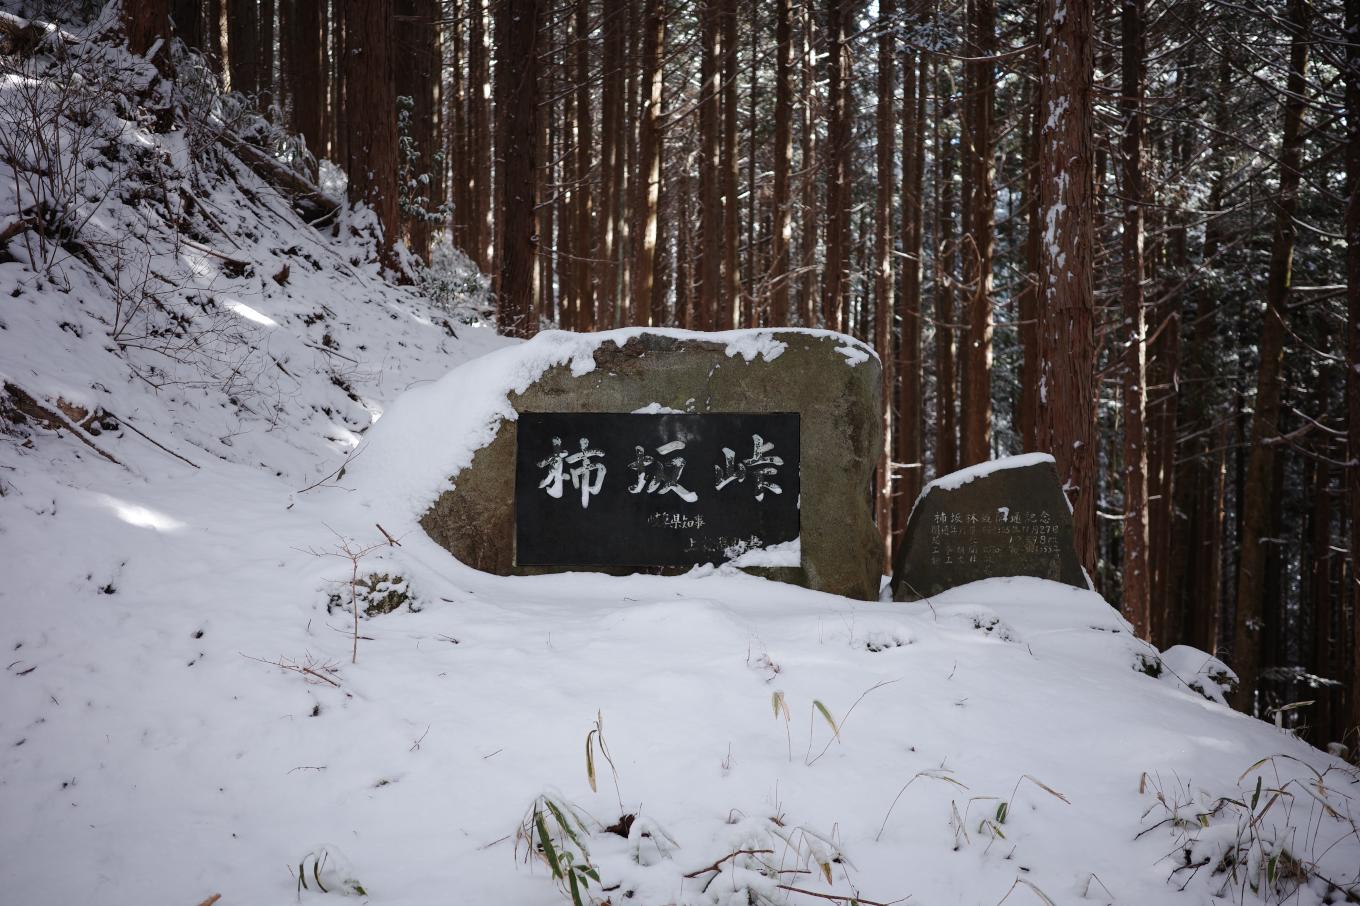 峠に置かれた「柿坂峠」と刻まれた石碑。